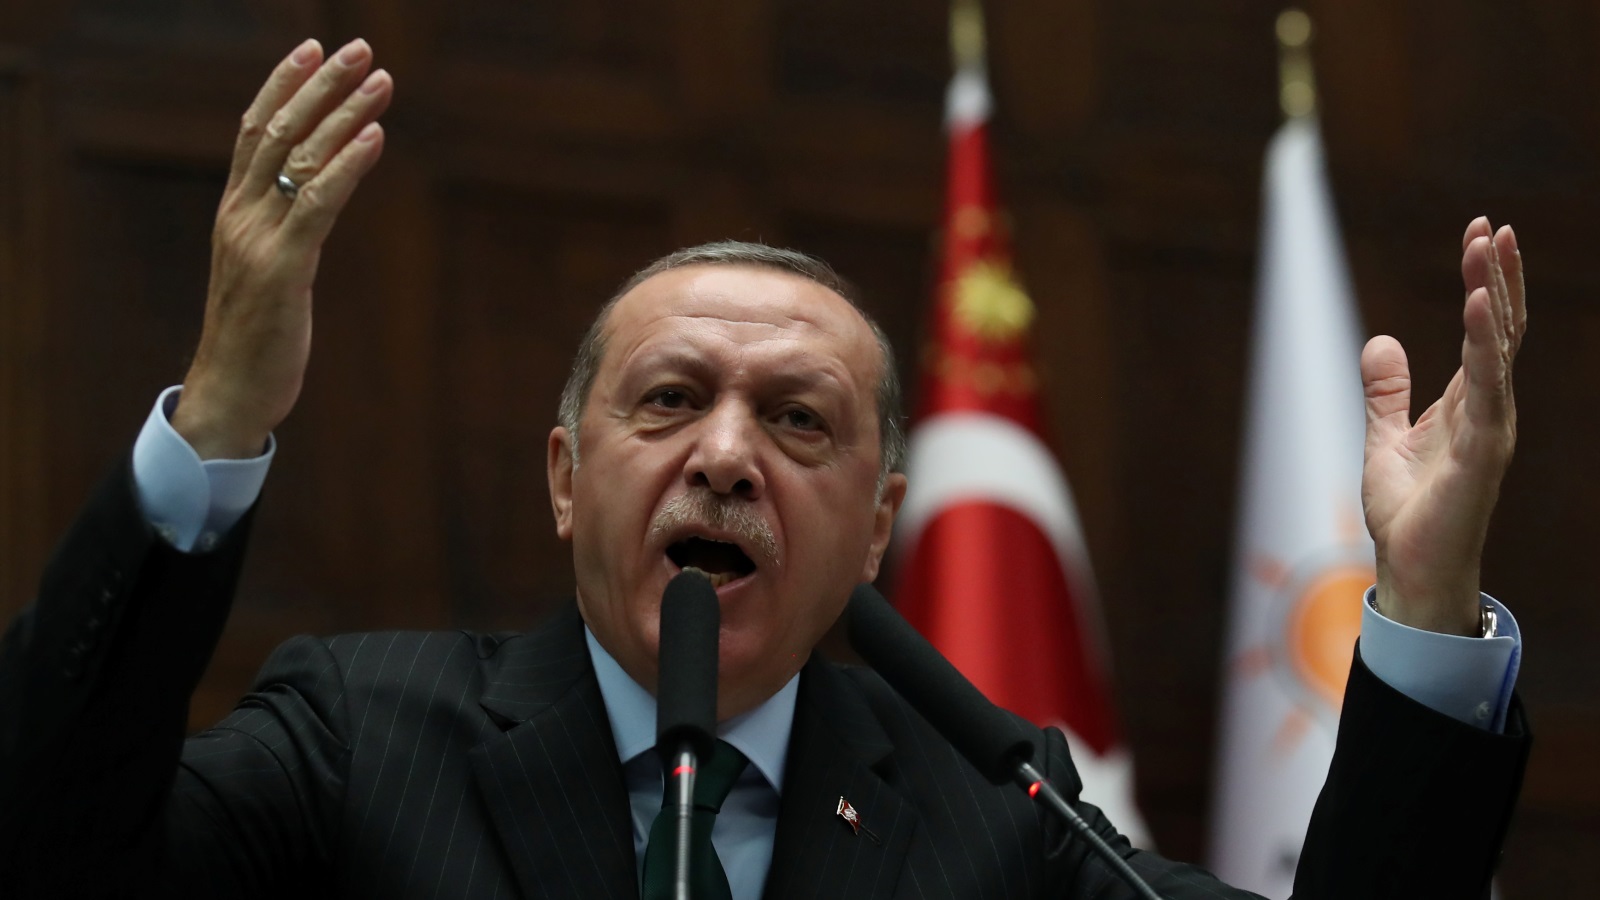 ‪أردوغان يدعو إلى قمة إسلامية طارئة الأسبوع القادم في إسطنبول‬ أردوغان يدعو إلى قمة إسلامية طارئة الأسبوع القادم في إسطنبول (رويترز)